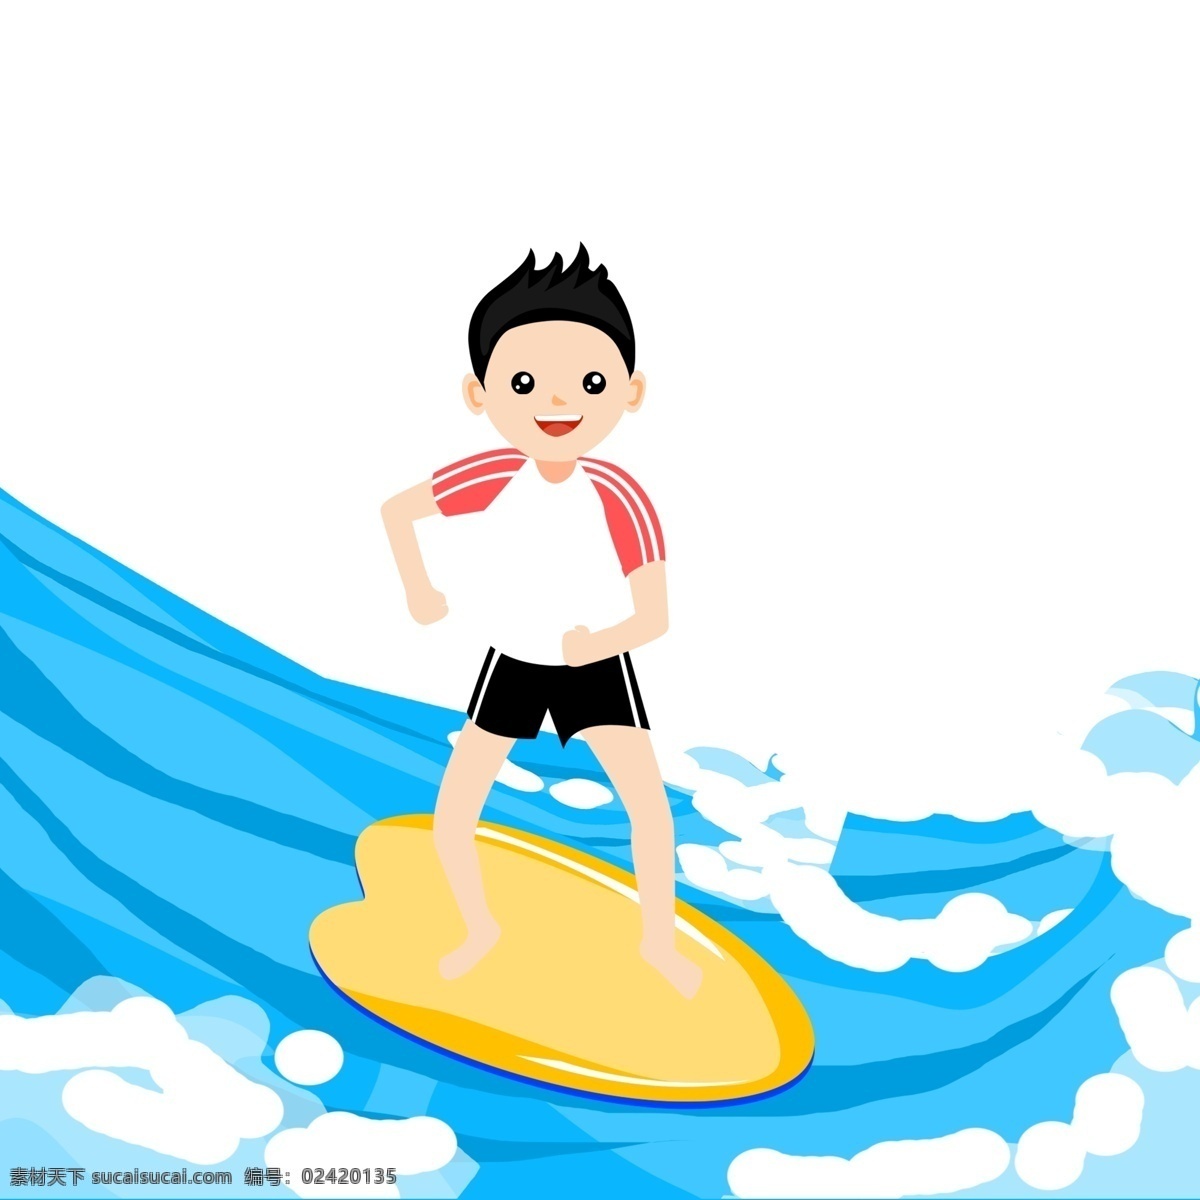 男孩 手绘 卡通 冲浪 冲浪板 滑板 海滩 卡通沙滩 卡通冲浪板 夏天 冲浪工具 彩色冲浪板 漂流板 条纹冲浪板 海边冲浪板